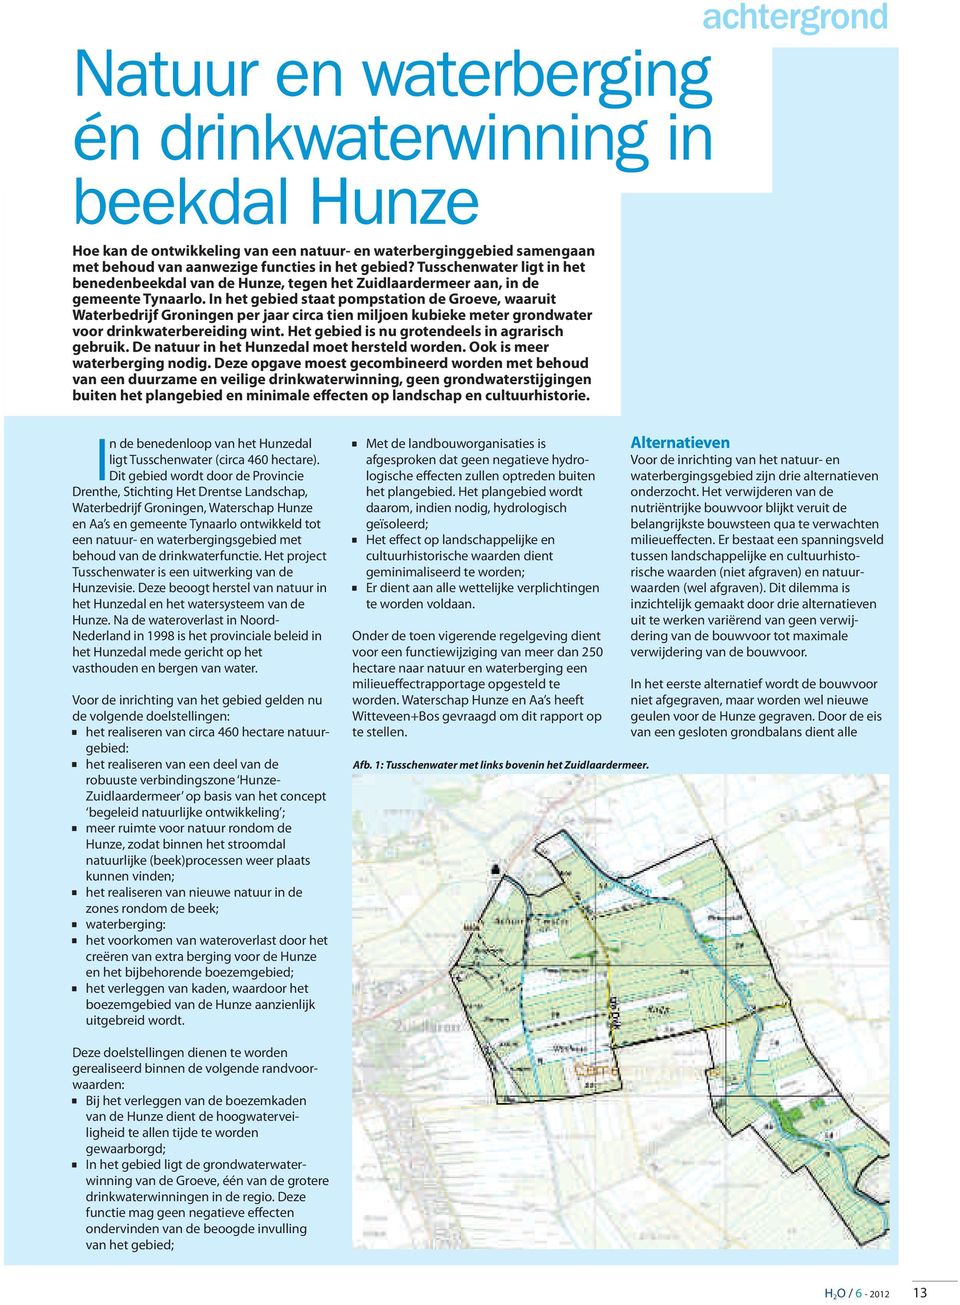 In het gebied staat pompstation de Groeve, waaruit Waterbedrijf Groningen per jaar circa tien miljoen kubieke meter grondwater voor drinkwaterbereiding wint.